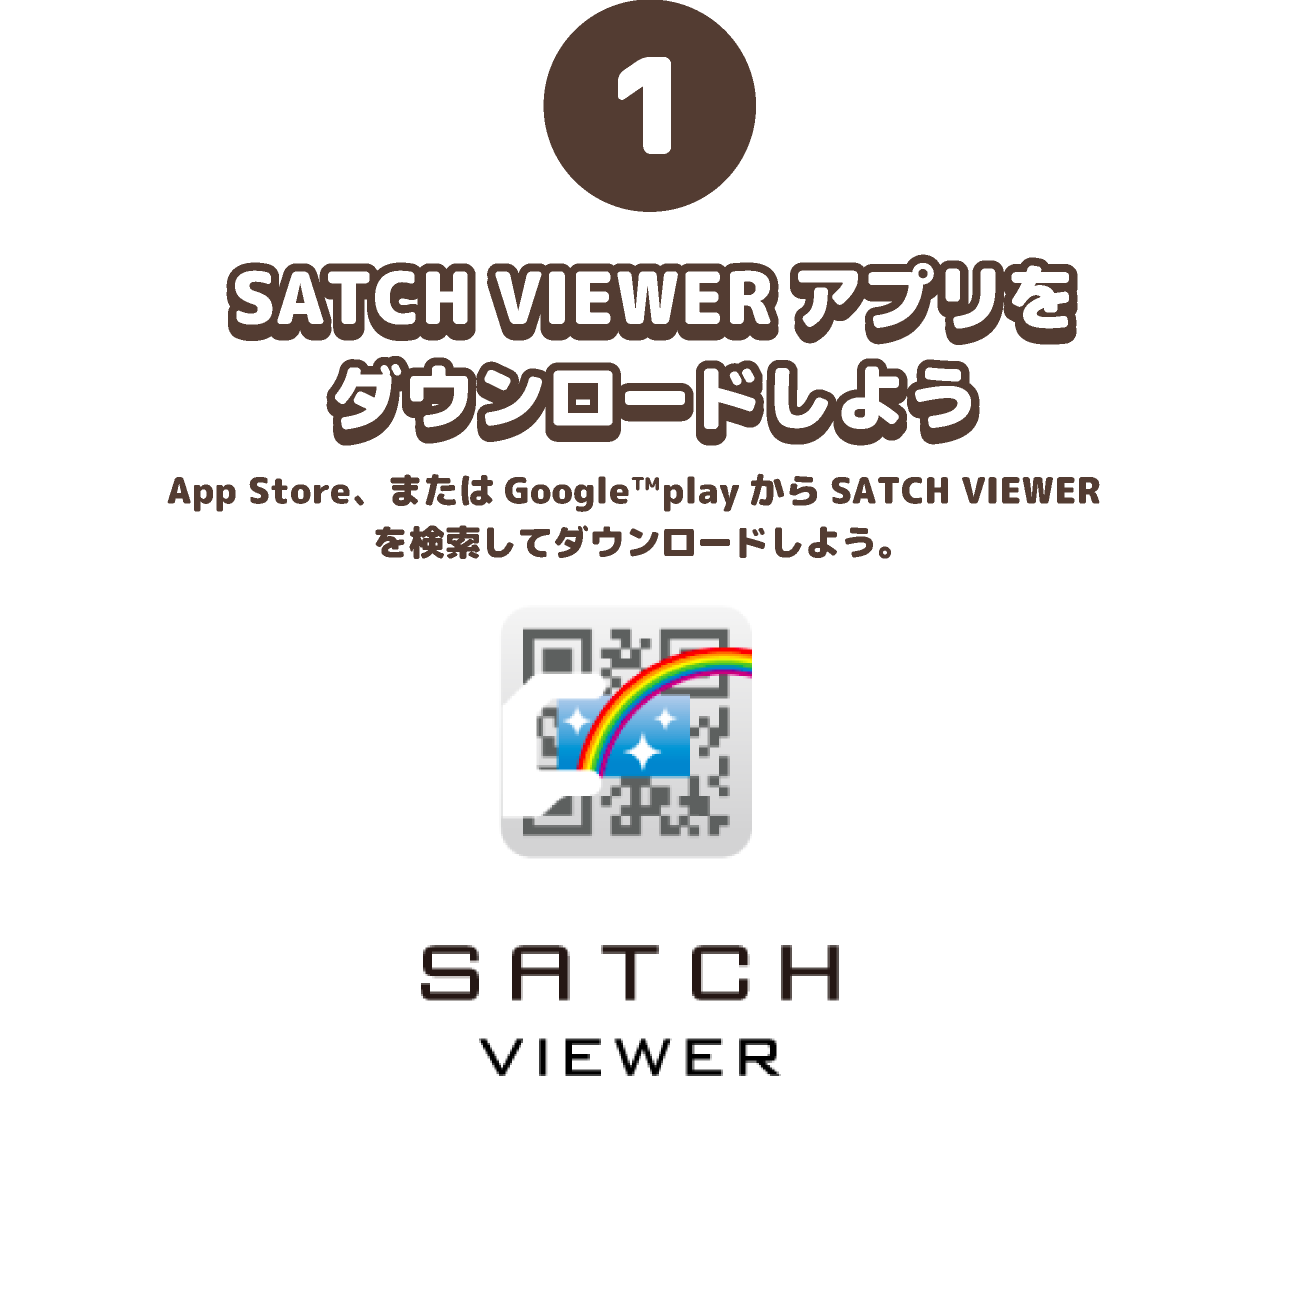 SATCH VIEWERアプリをダウンロードしよう。App Store、またはGoogle™playからSATCH VIEWER を検索してダウンロードしよう。